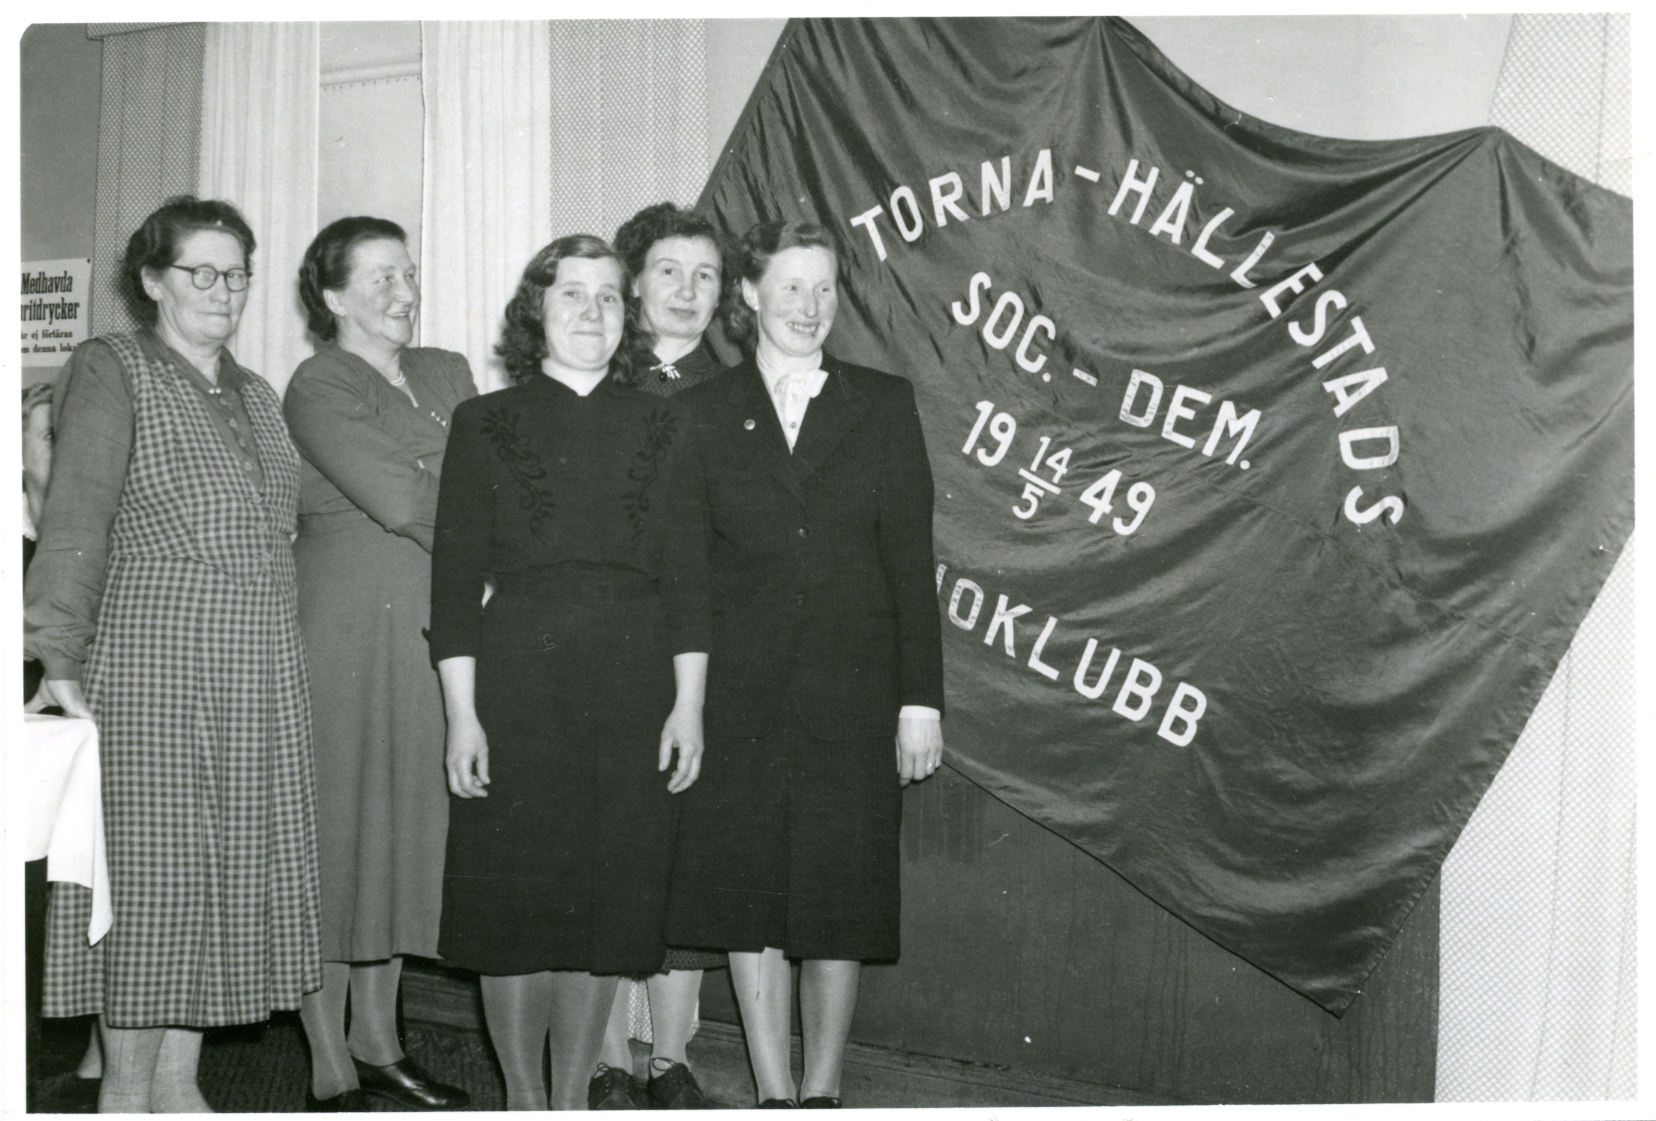 Torna-Hällestads socialdemokratiska kvinnoklubb inviger fana 1953, Hillevi Jönsson ordf. Bild i Arbetet 22/2 1953.